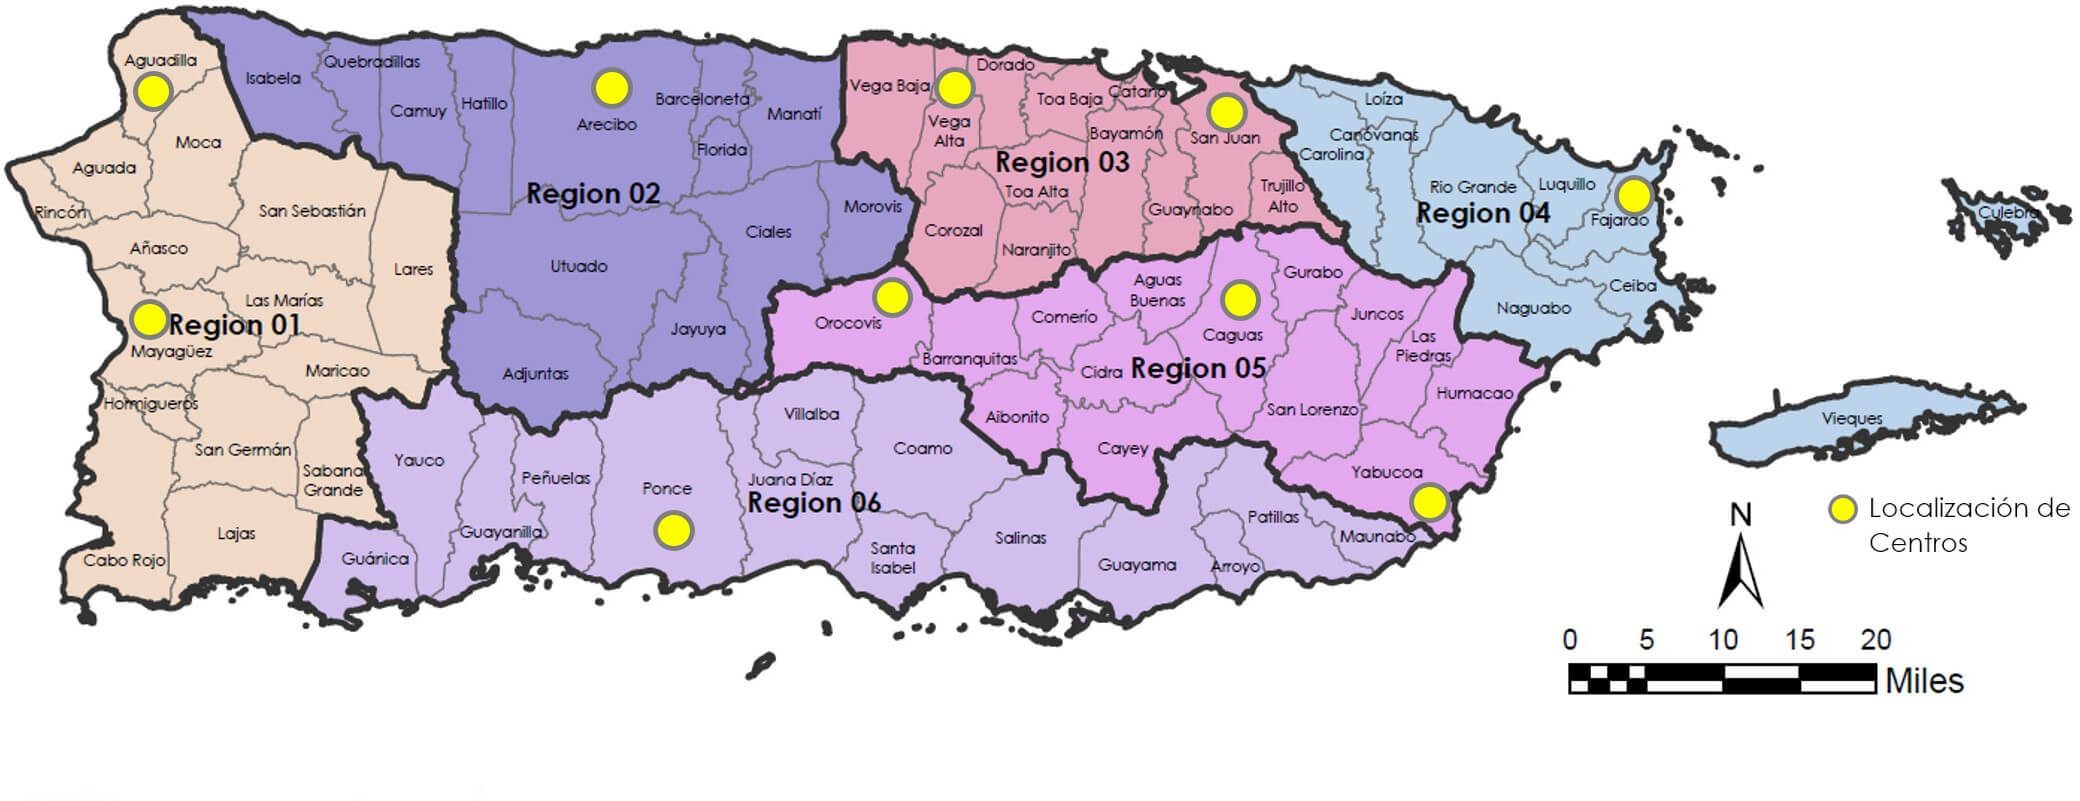 Mapa de Puerto Rico con las oficinas por regiones.